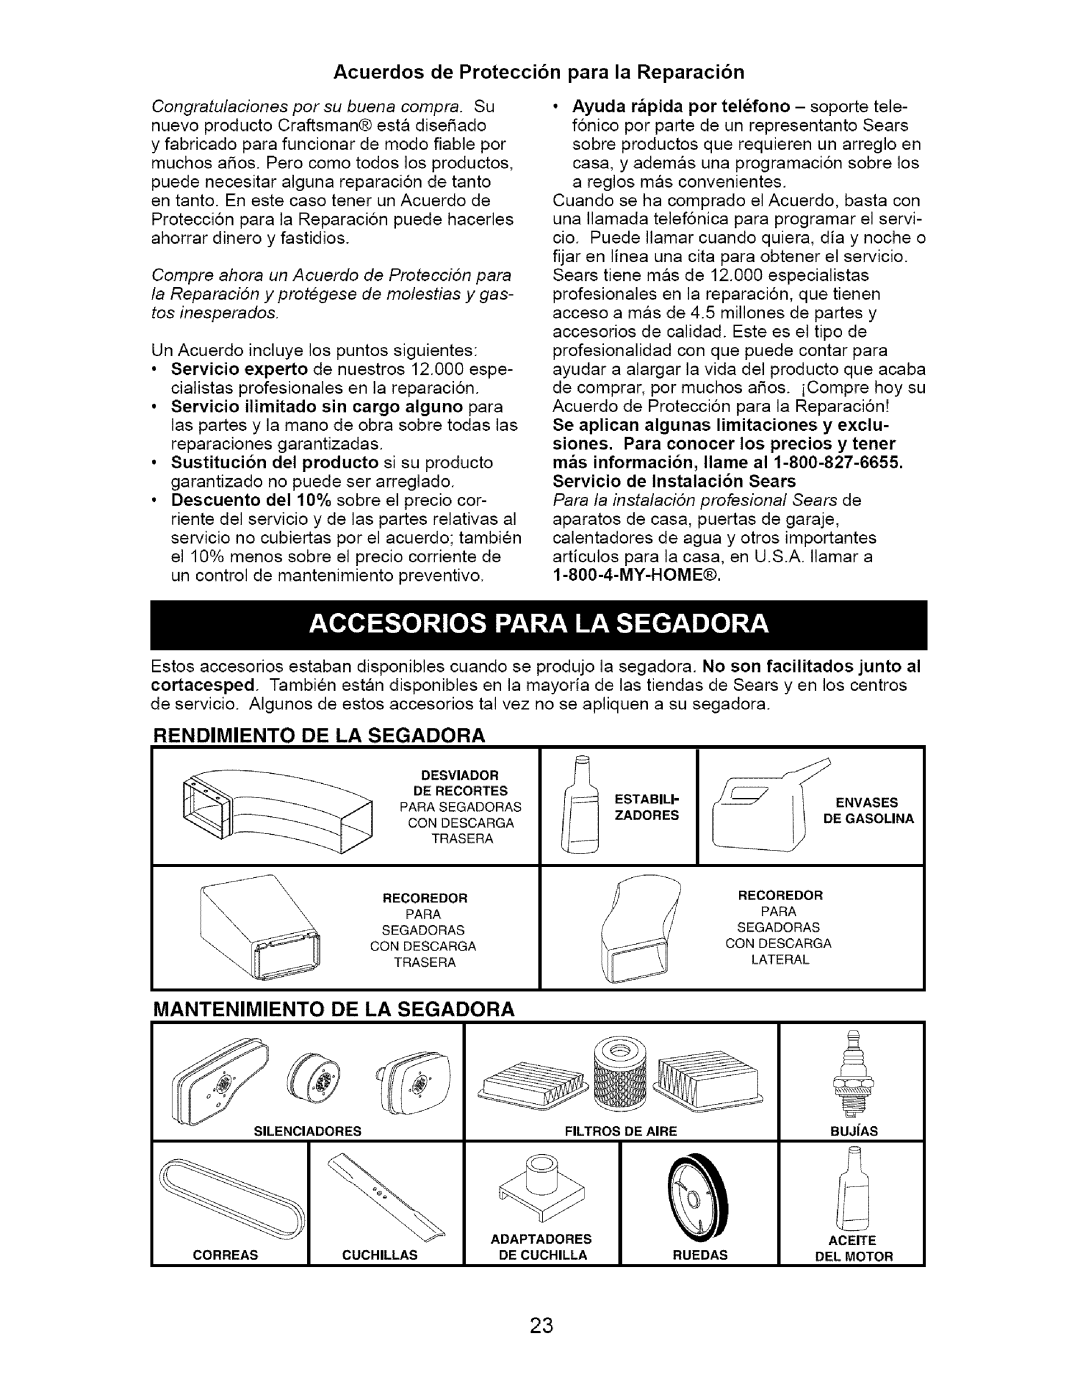 Craftsman 917.37172 Acuerdos de Protecci6n para la Reparaci6n, Servicio de Instalacion Sears, Rendimiento De La Segadora 